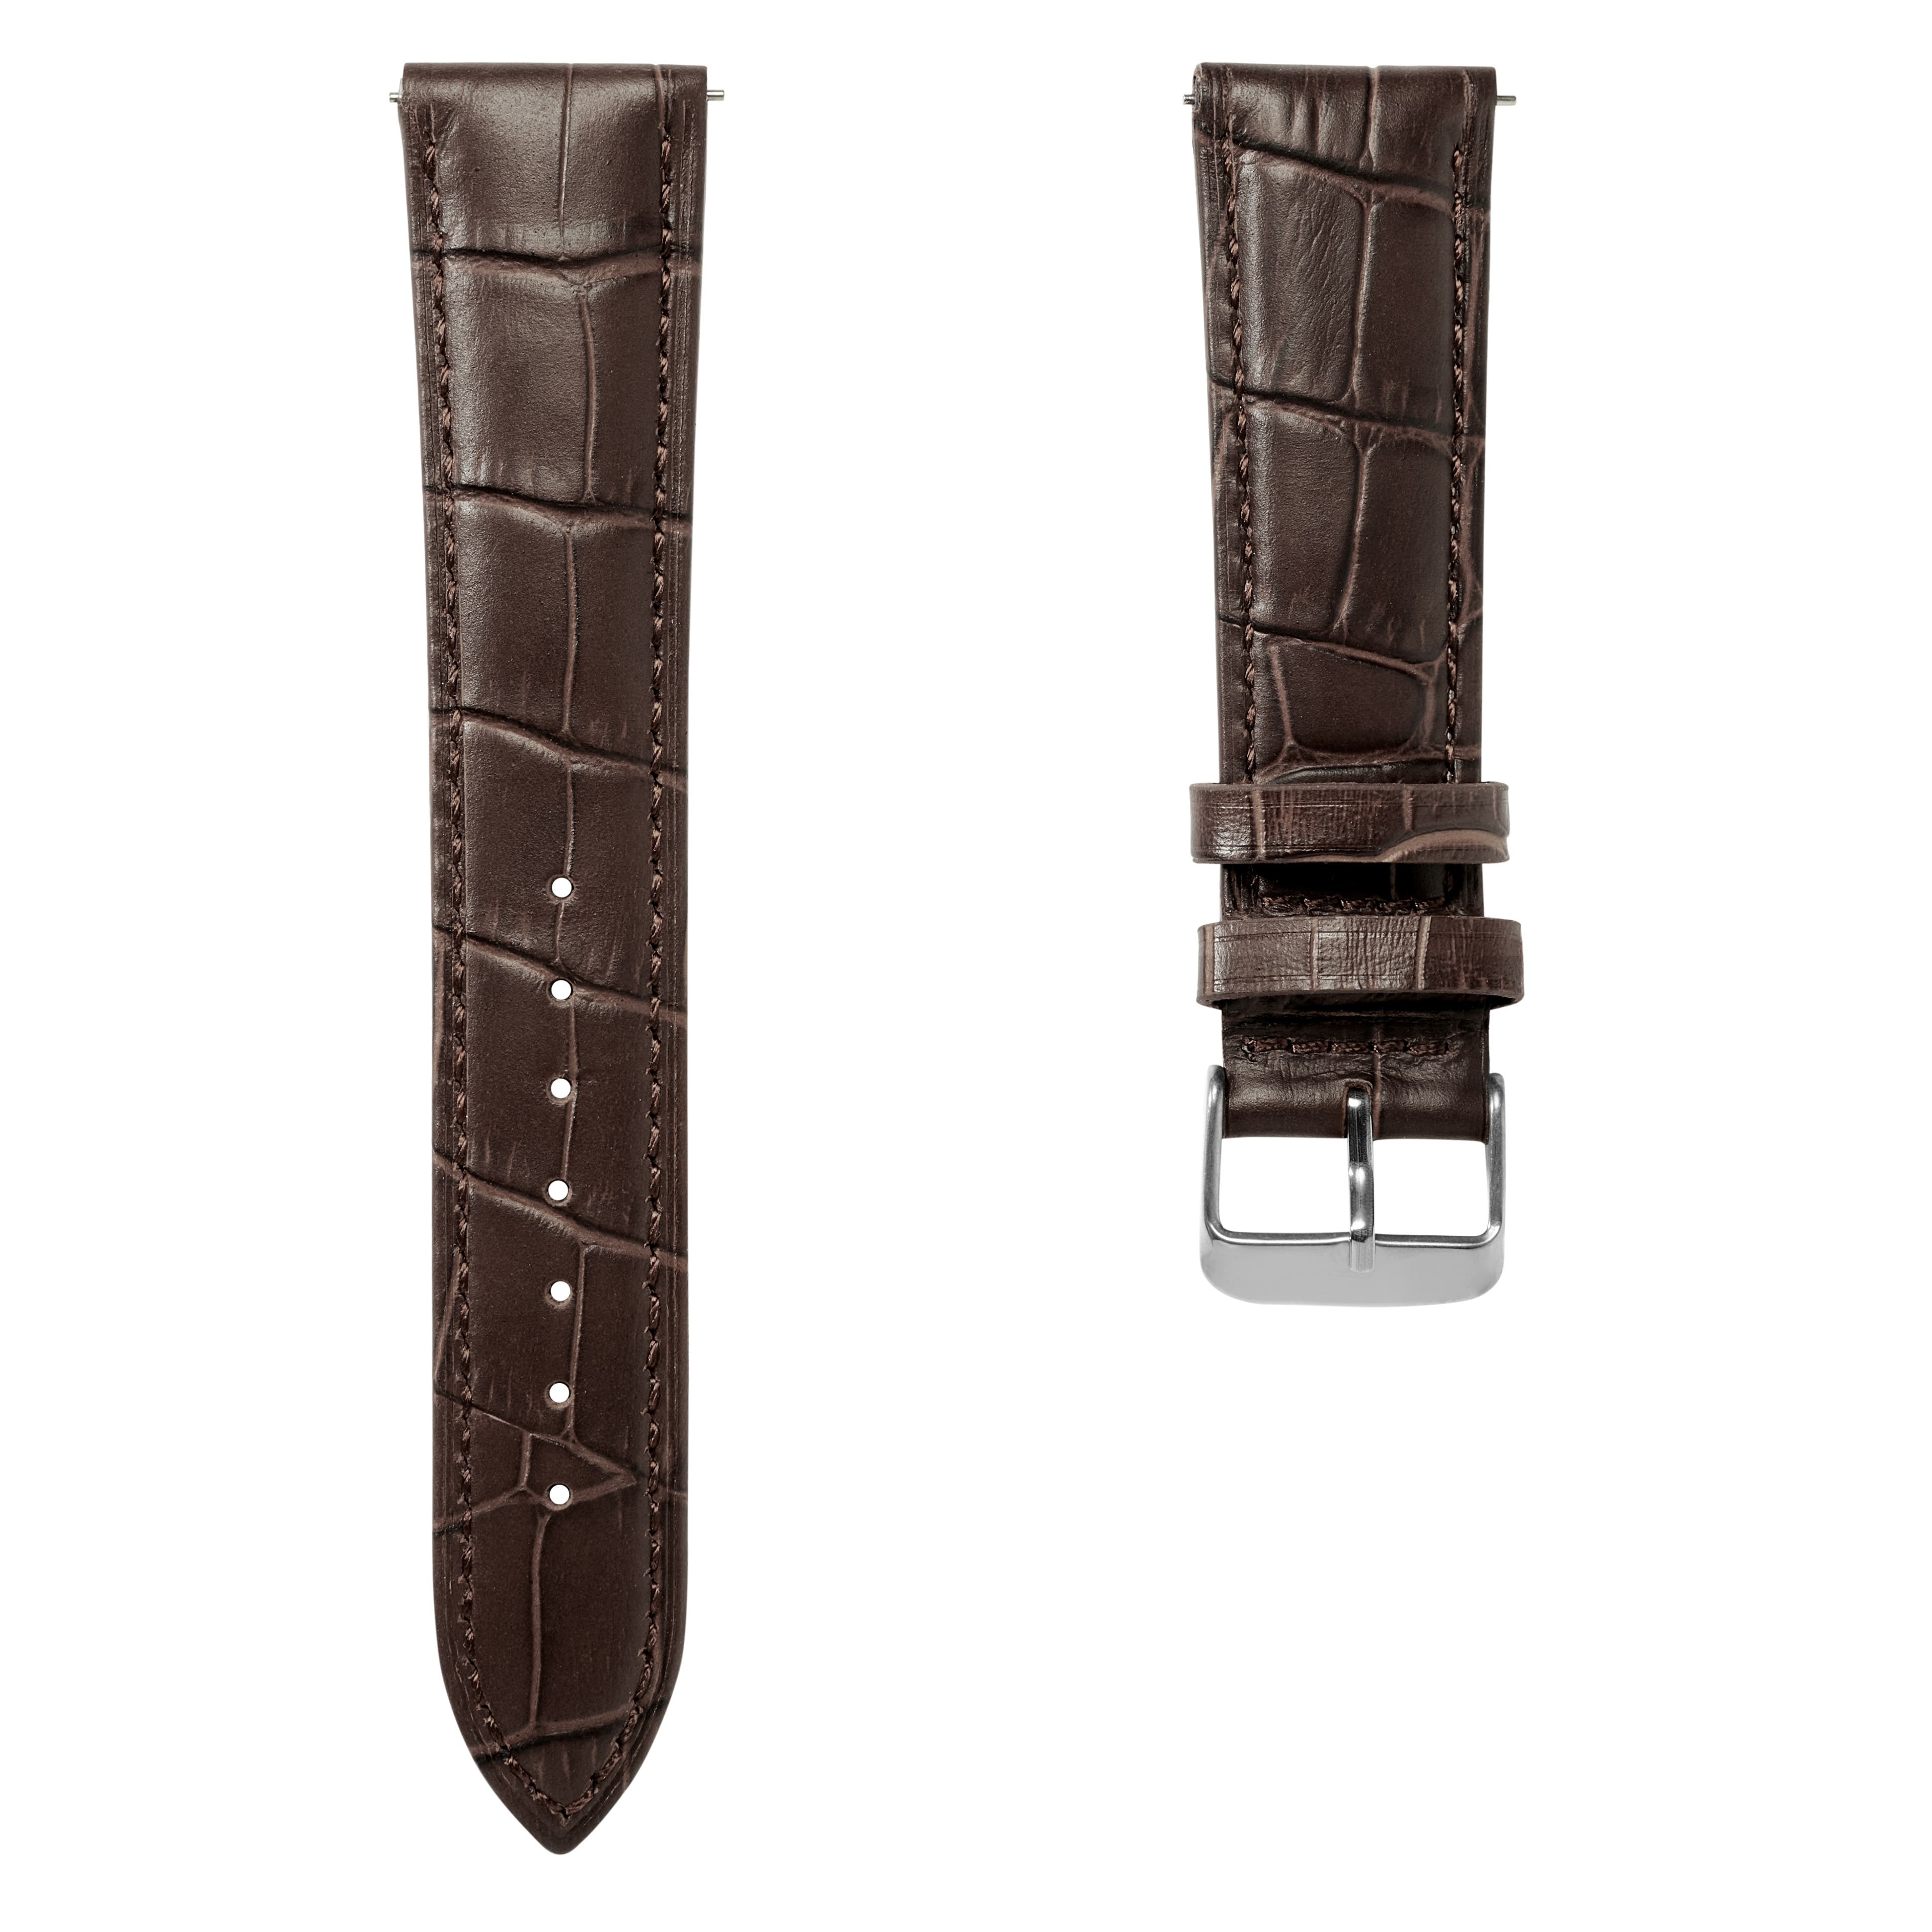  Bracelet de montre en cuir marron foncé à motif crocodile avec boucle couleur argent et système d'attache rapide – 22 mm